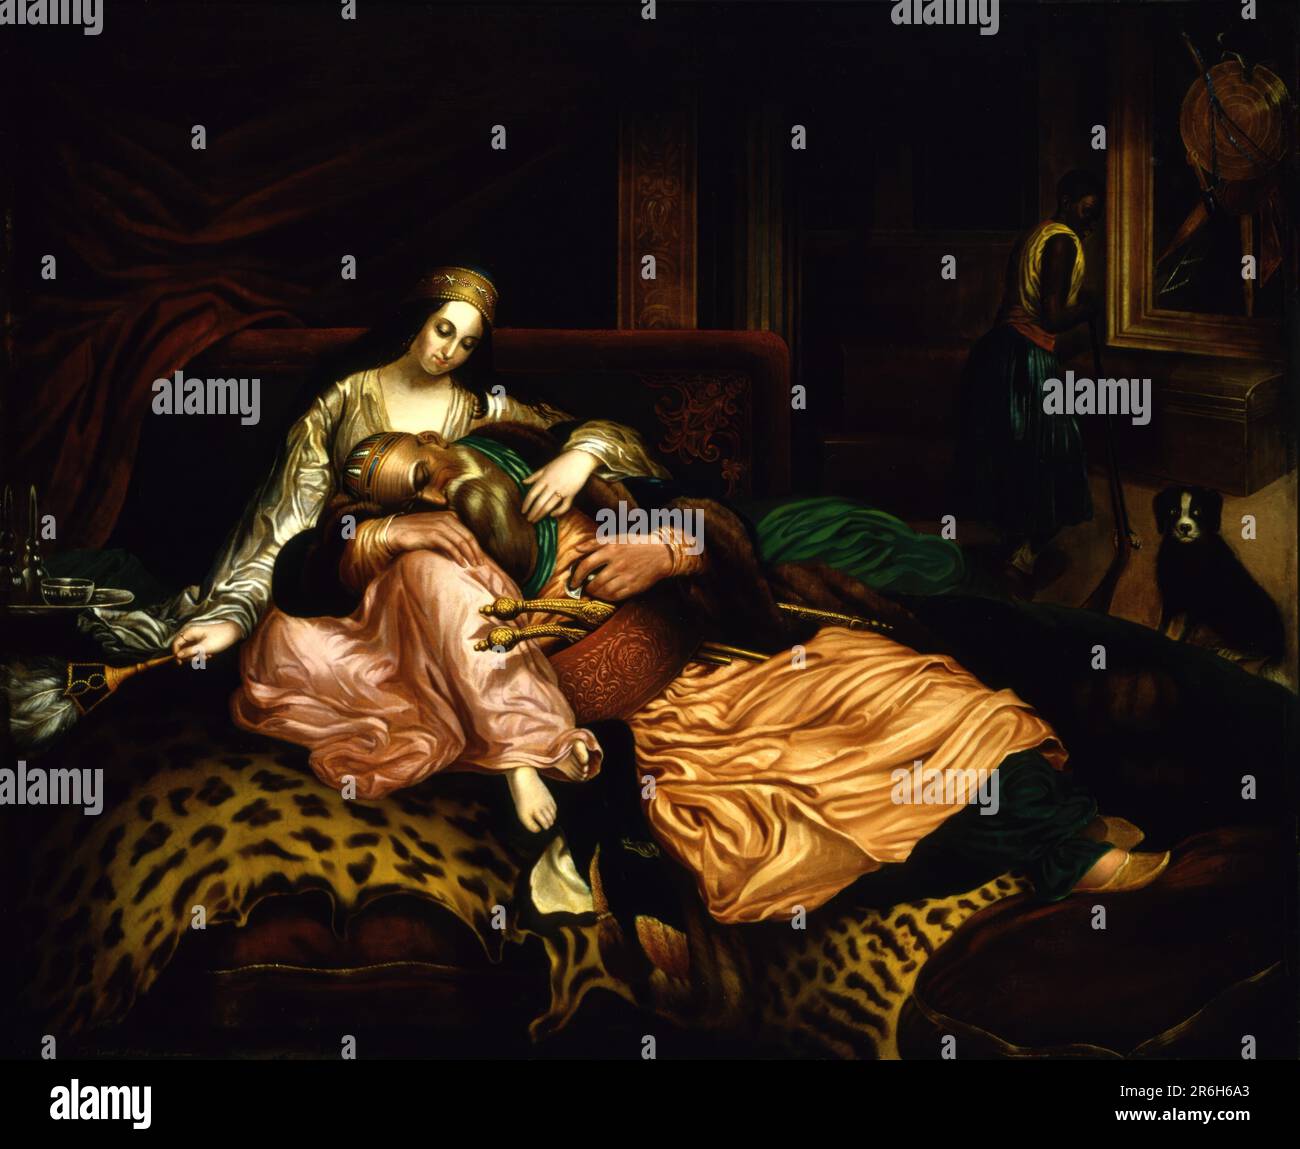 (Scène intérieure avec Sultan et Concubine). Date : n.d. huile sur toile. Musée: Smithsonian American Art Museum. Banque D'Images